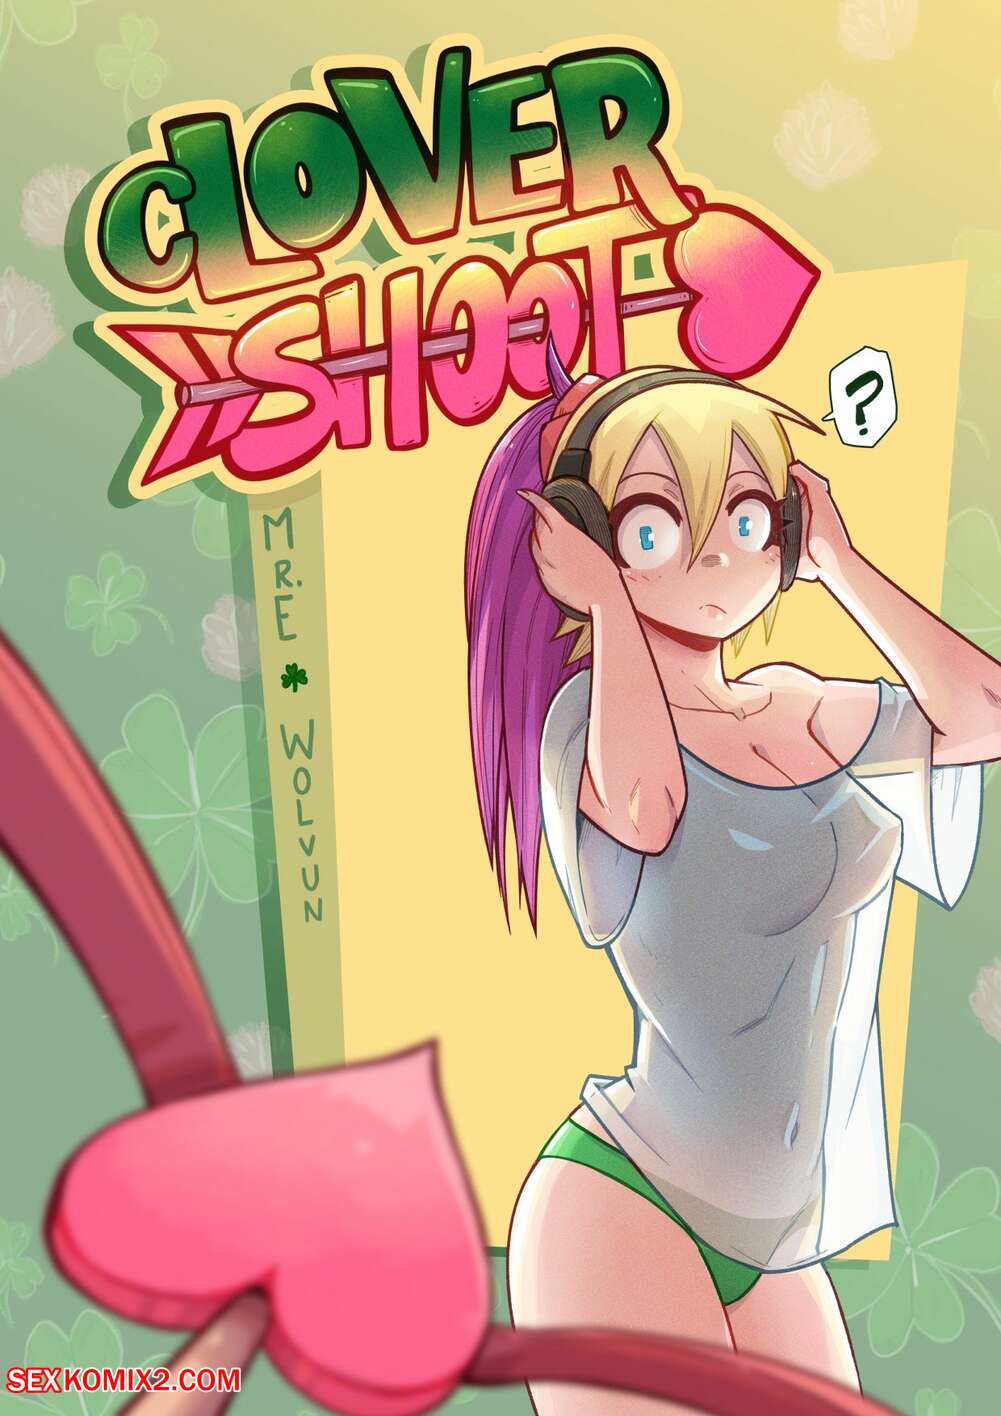 1001px x 1416px - âœ…ï¸ Porn comic Clover Shoot. Chapter 2. Mr.E. Sex comic busty blonde was |  Porn comics in English for adults only | sexkomix2.com